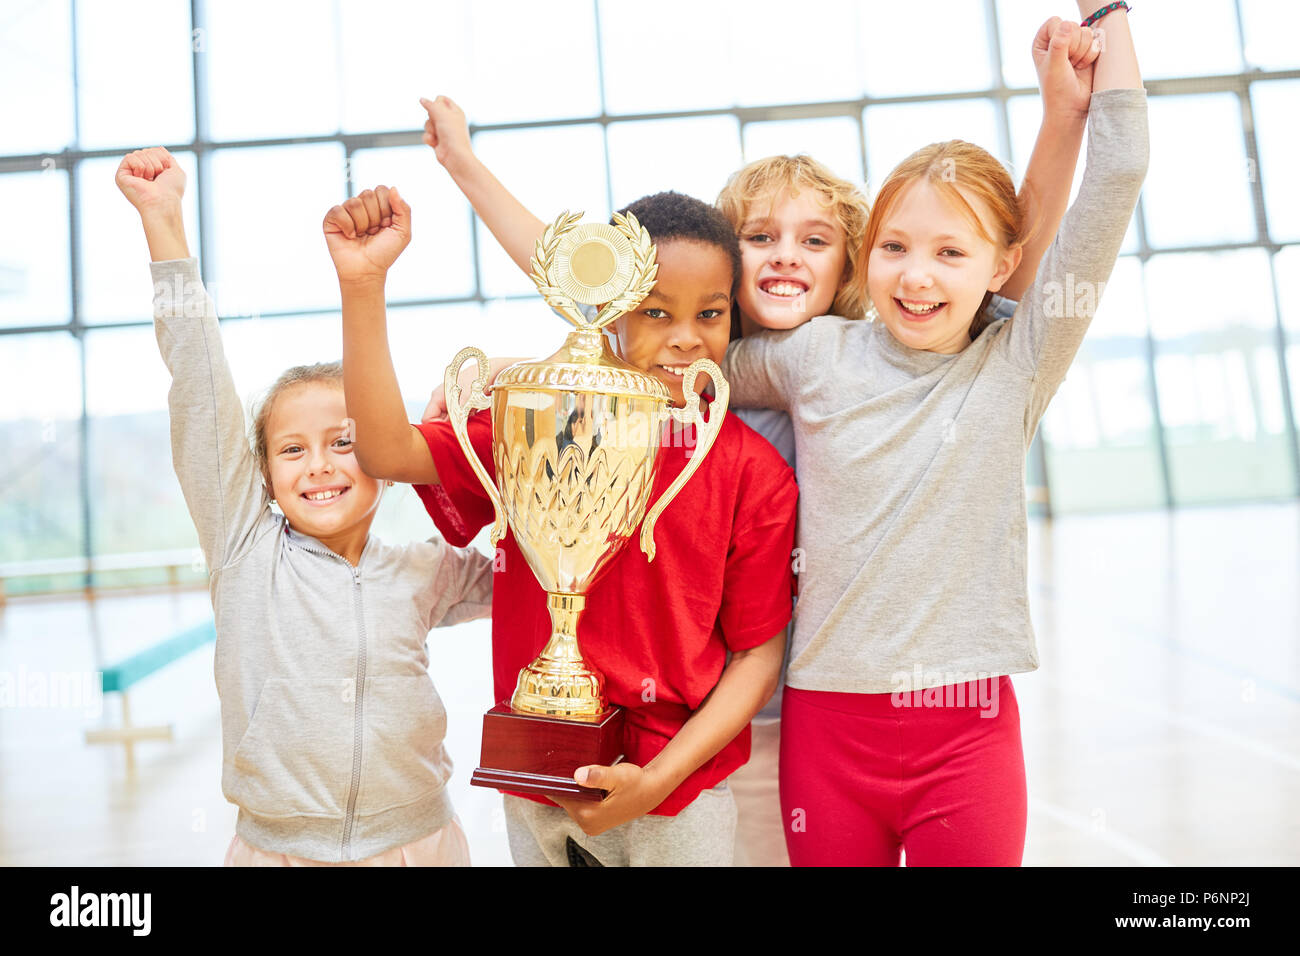 Kinder- team Prost mit einer Schale an einer Schule Sport Wettbewerb Stockfoto